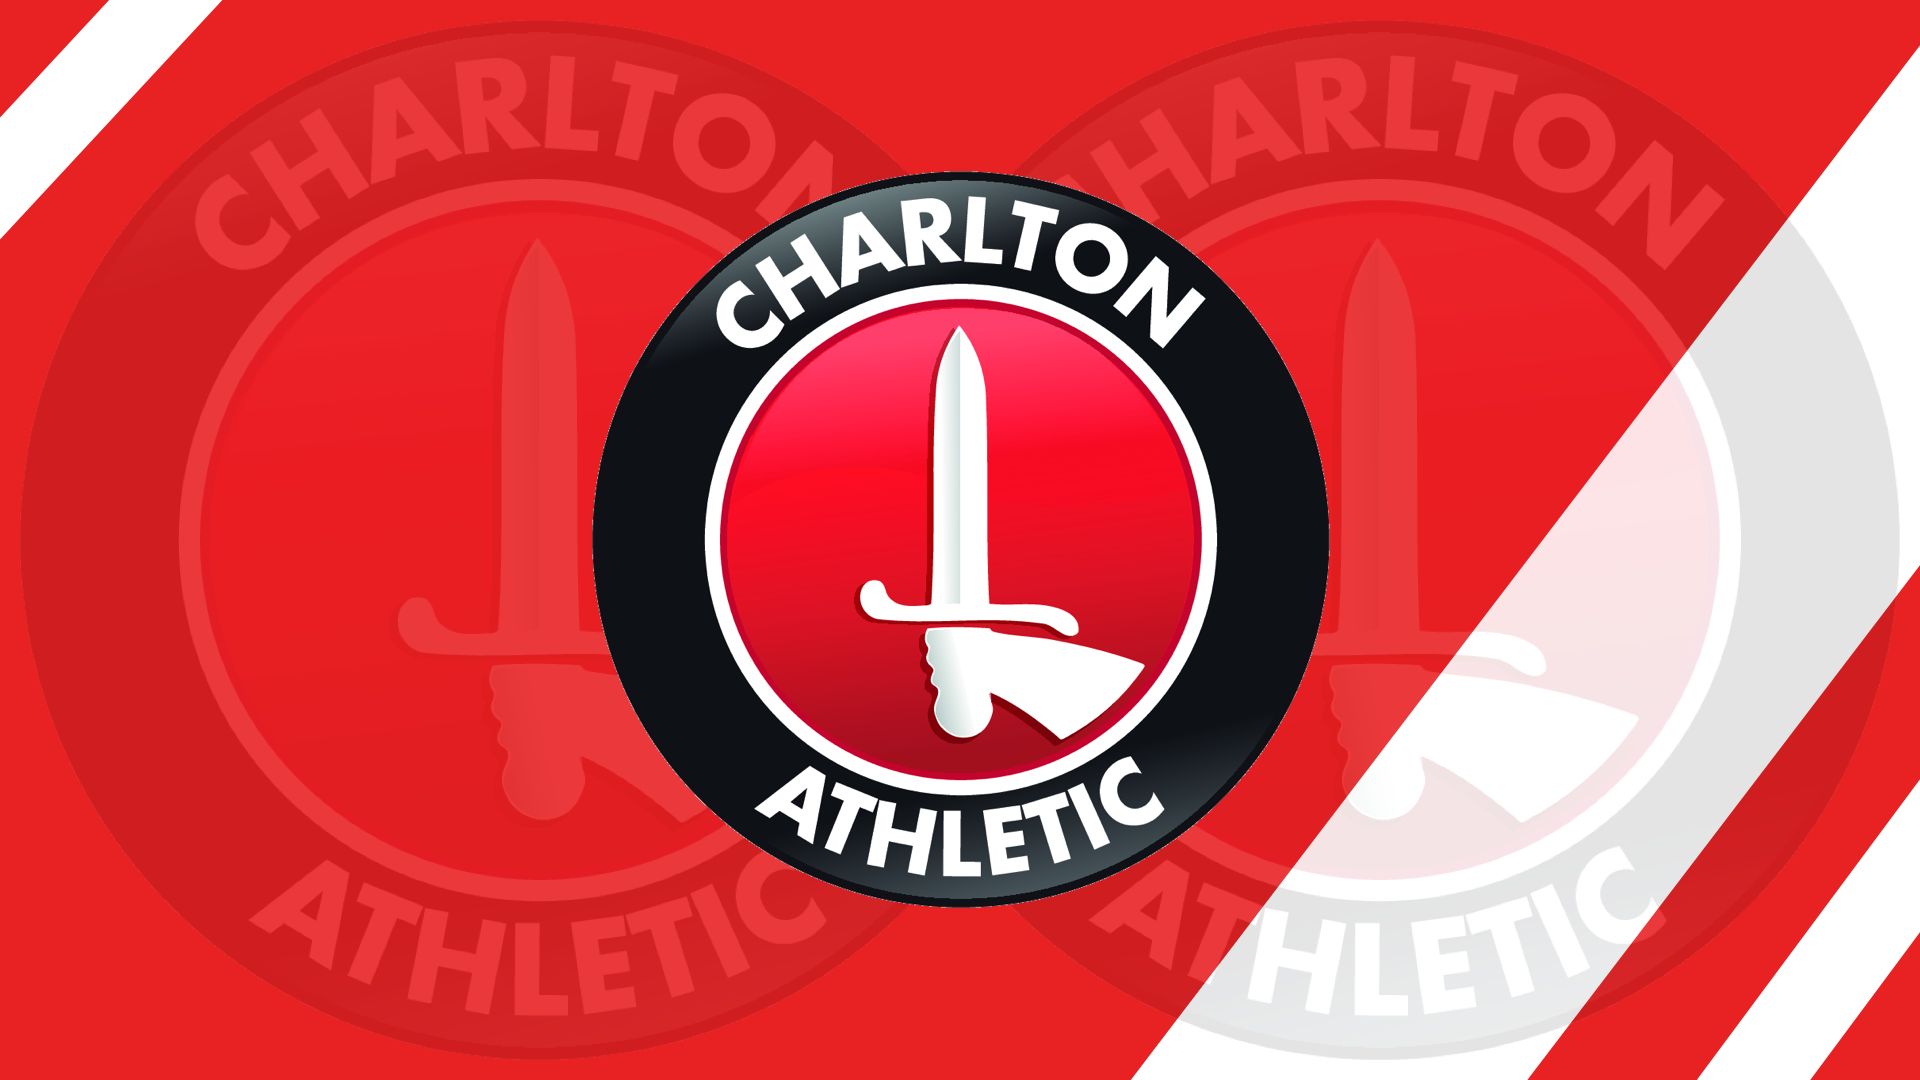 Descargar fondos de escritorio de Charlton Athletic Fc HD